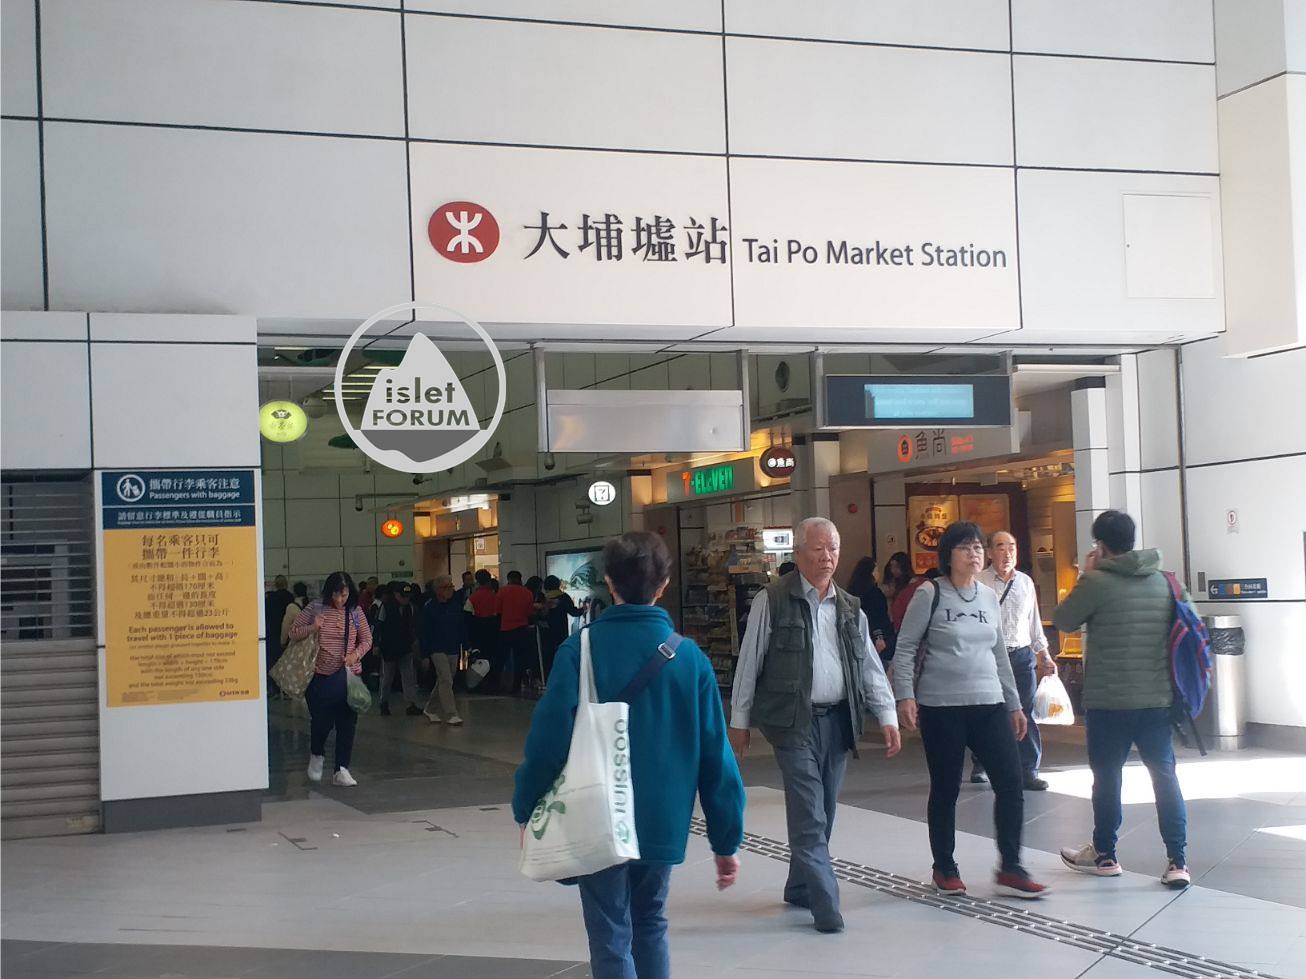 大埔墟站tai po market station4 (4).jpg